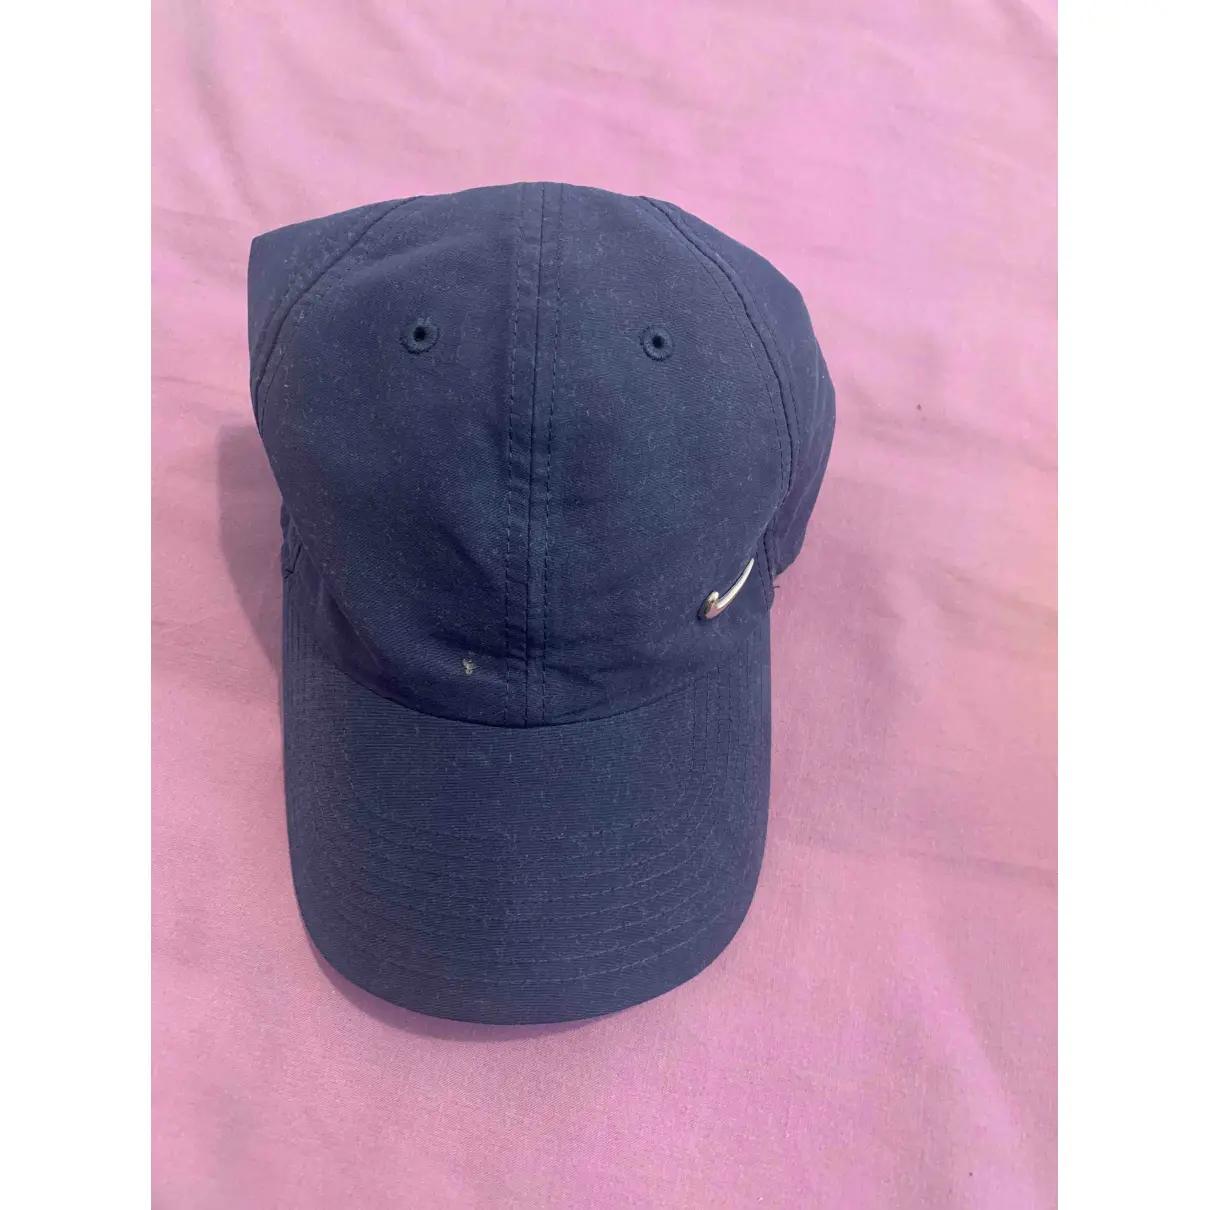 Buy Nike Hat online